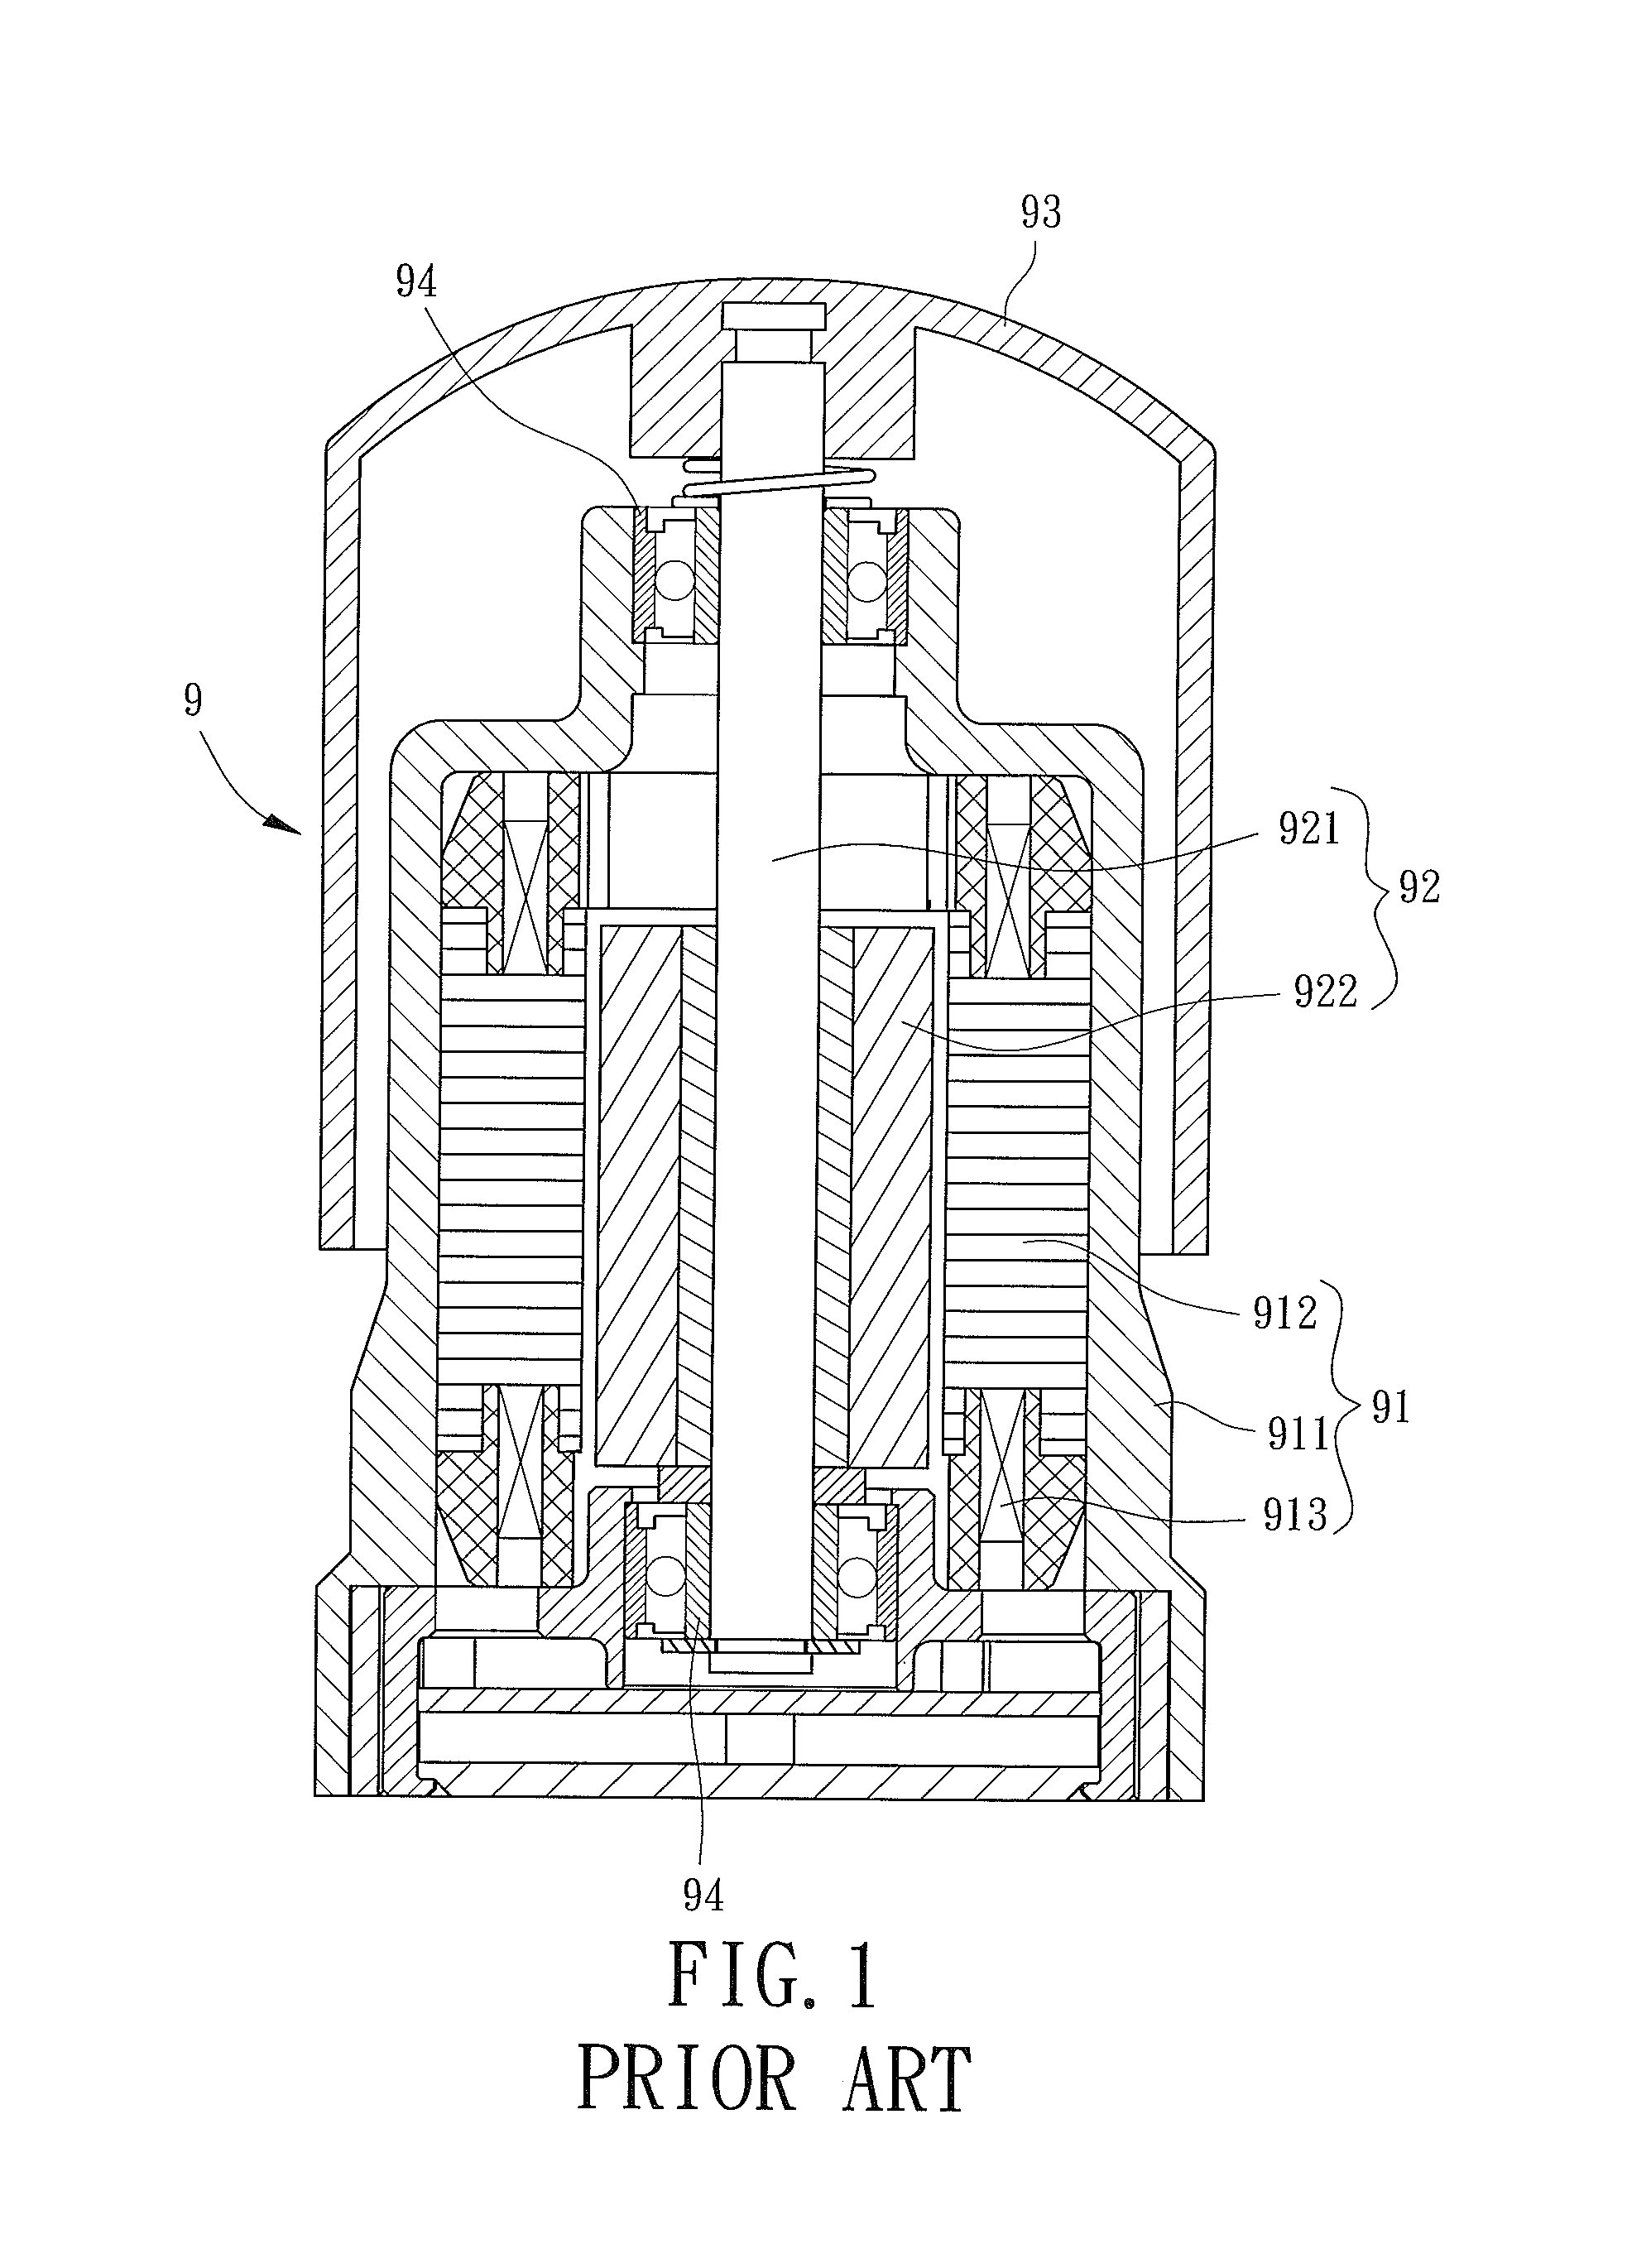 Inner-Rotor Motor